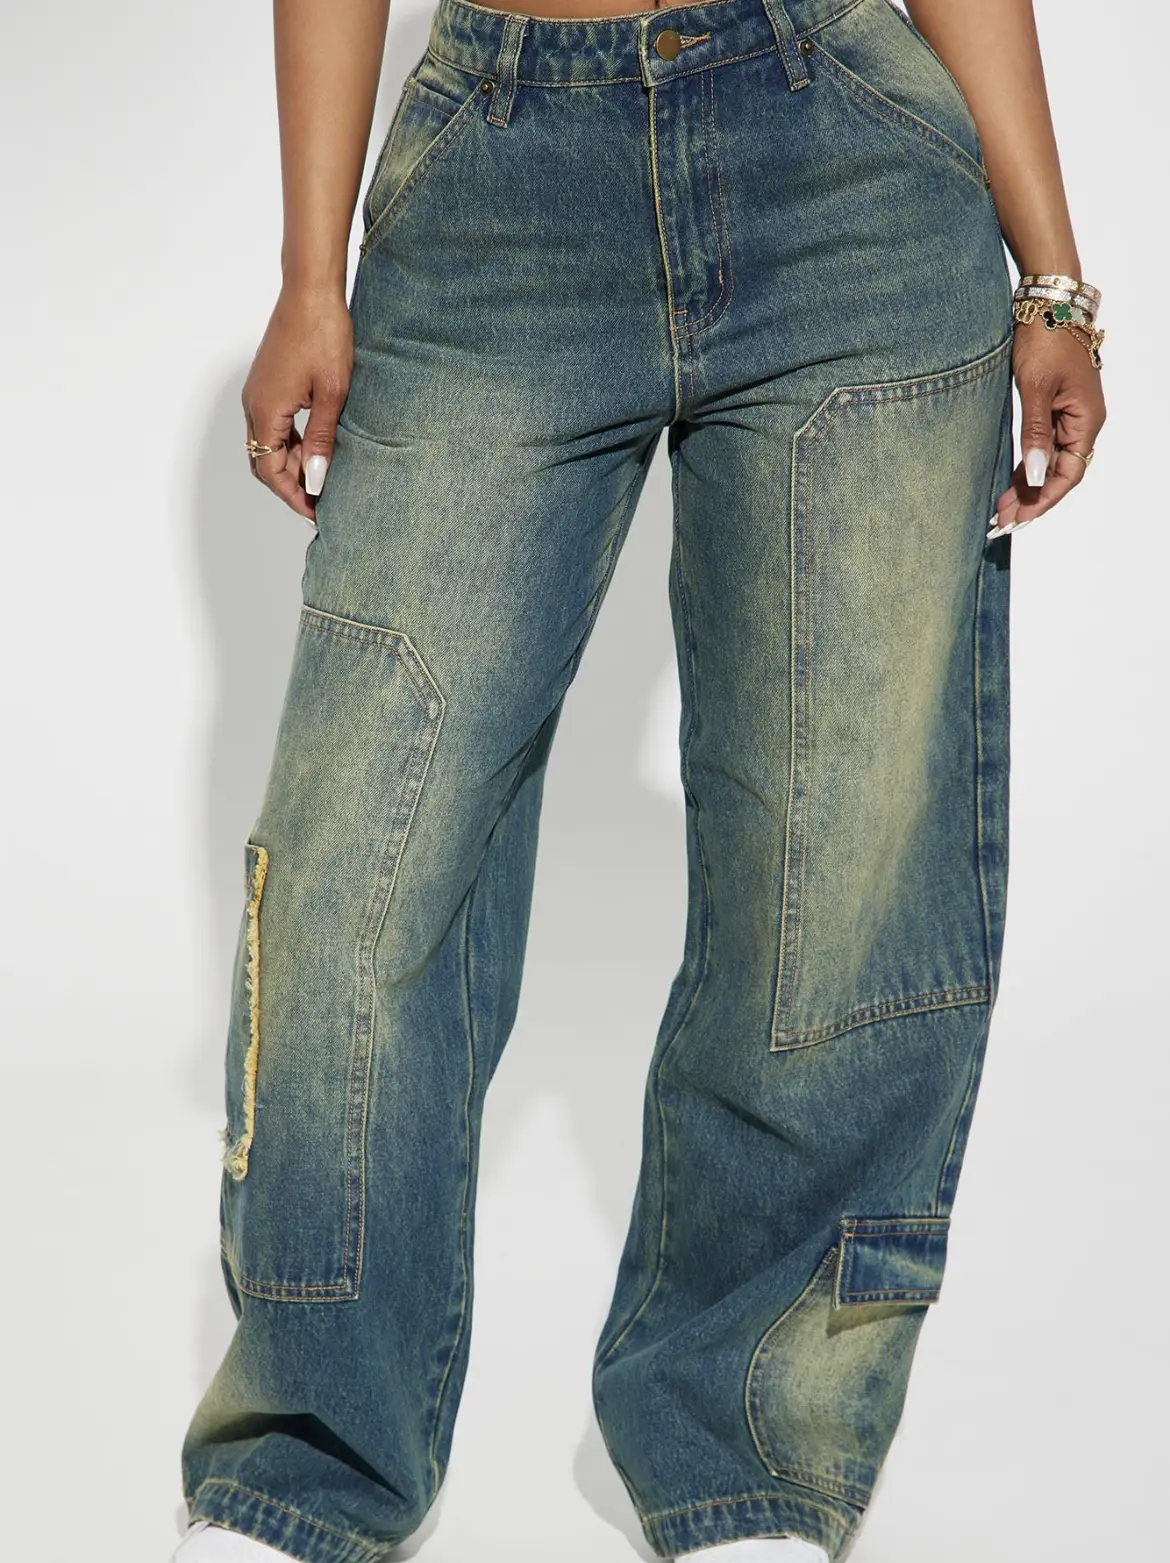 fashion nova haul jeans plus size｜TikTok Search